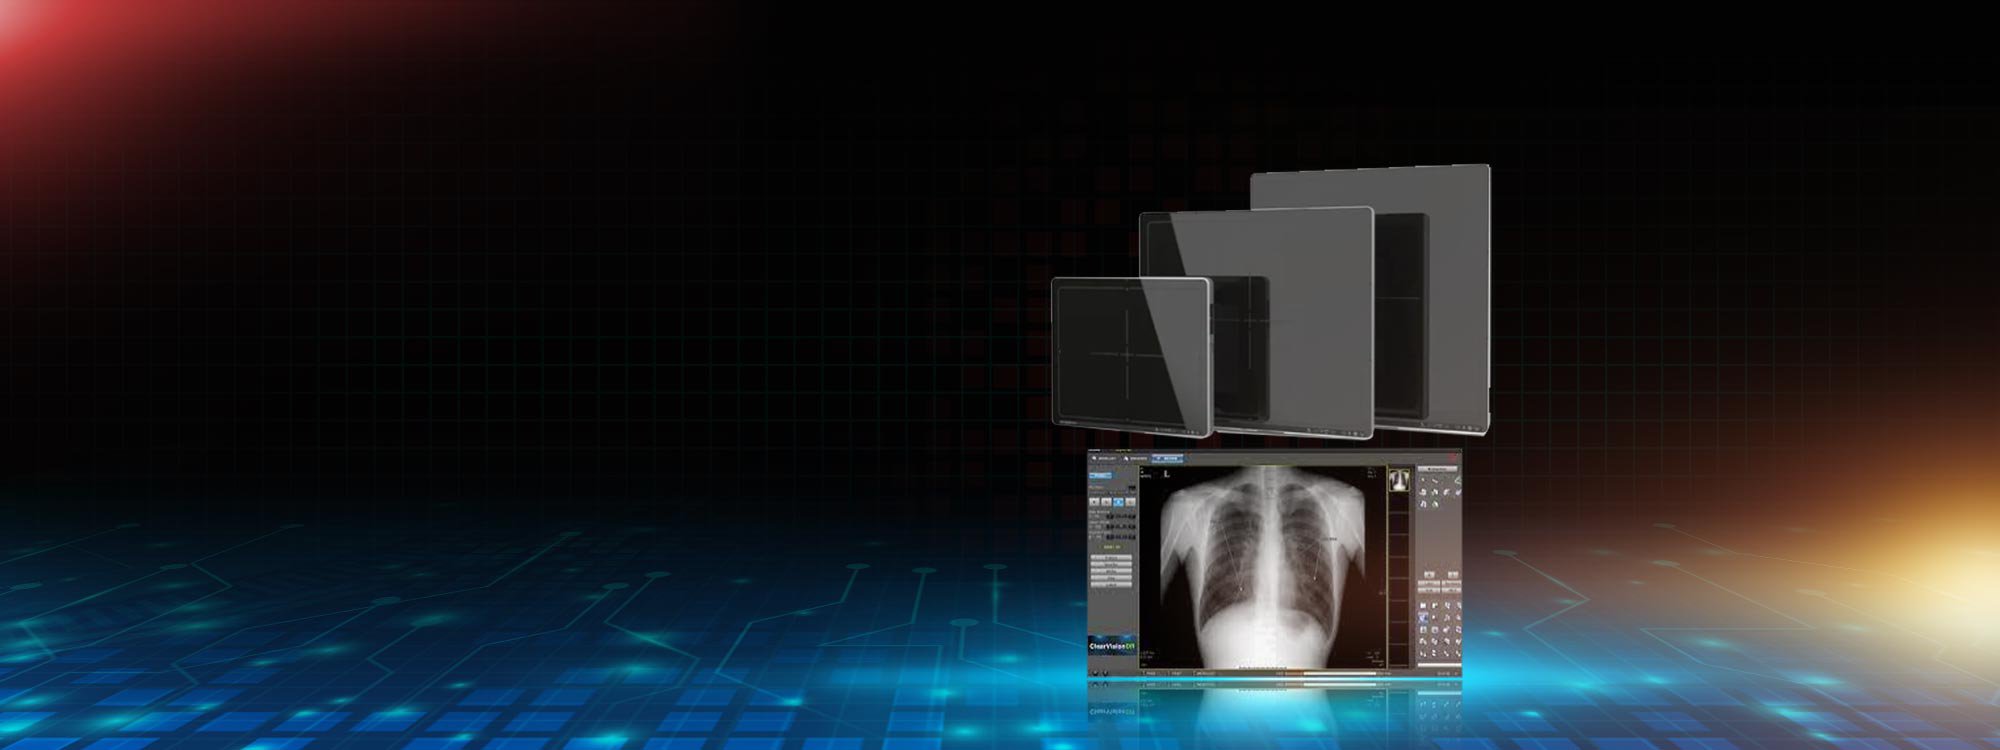 Dijital Röntgen Cihazları Teknik Servis Hizmetleri